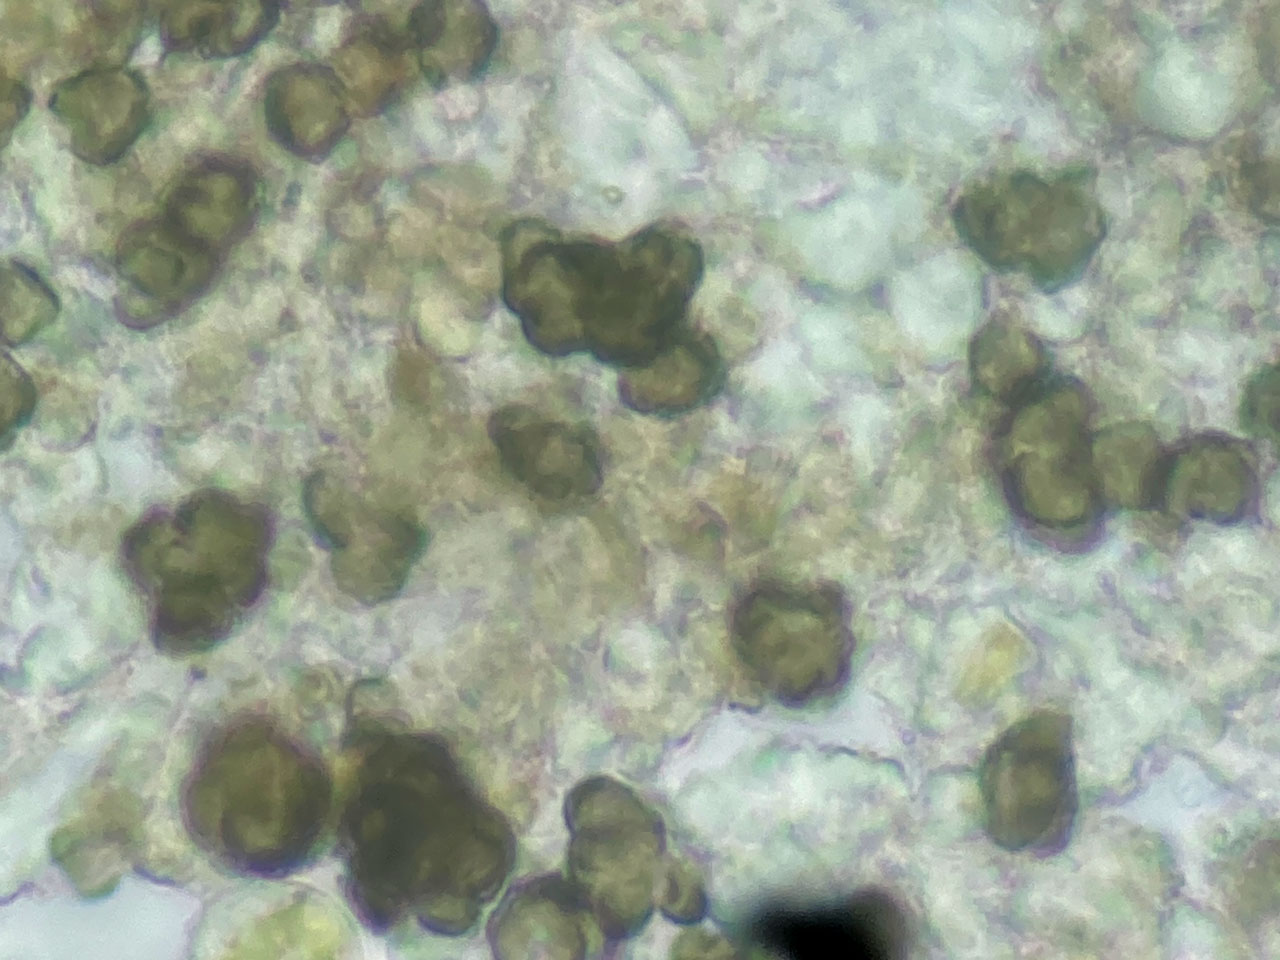 Milospium lacoizquetae, Cladonia polydactyla, Coed Cymerau, Meirionnydd 